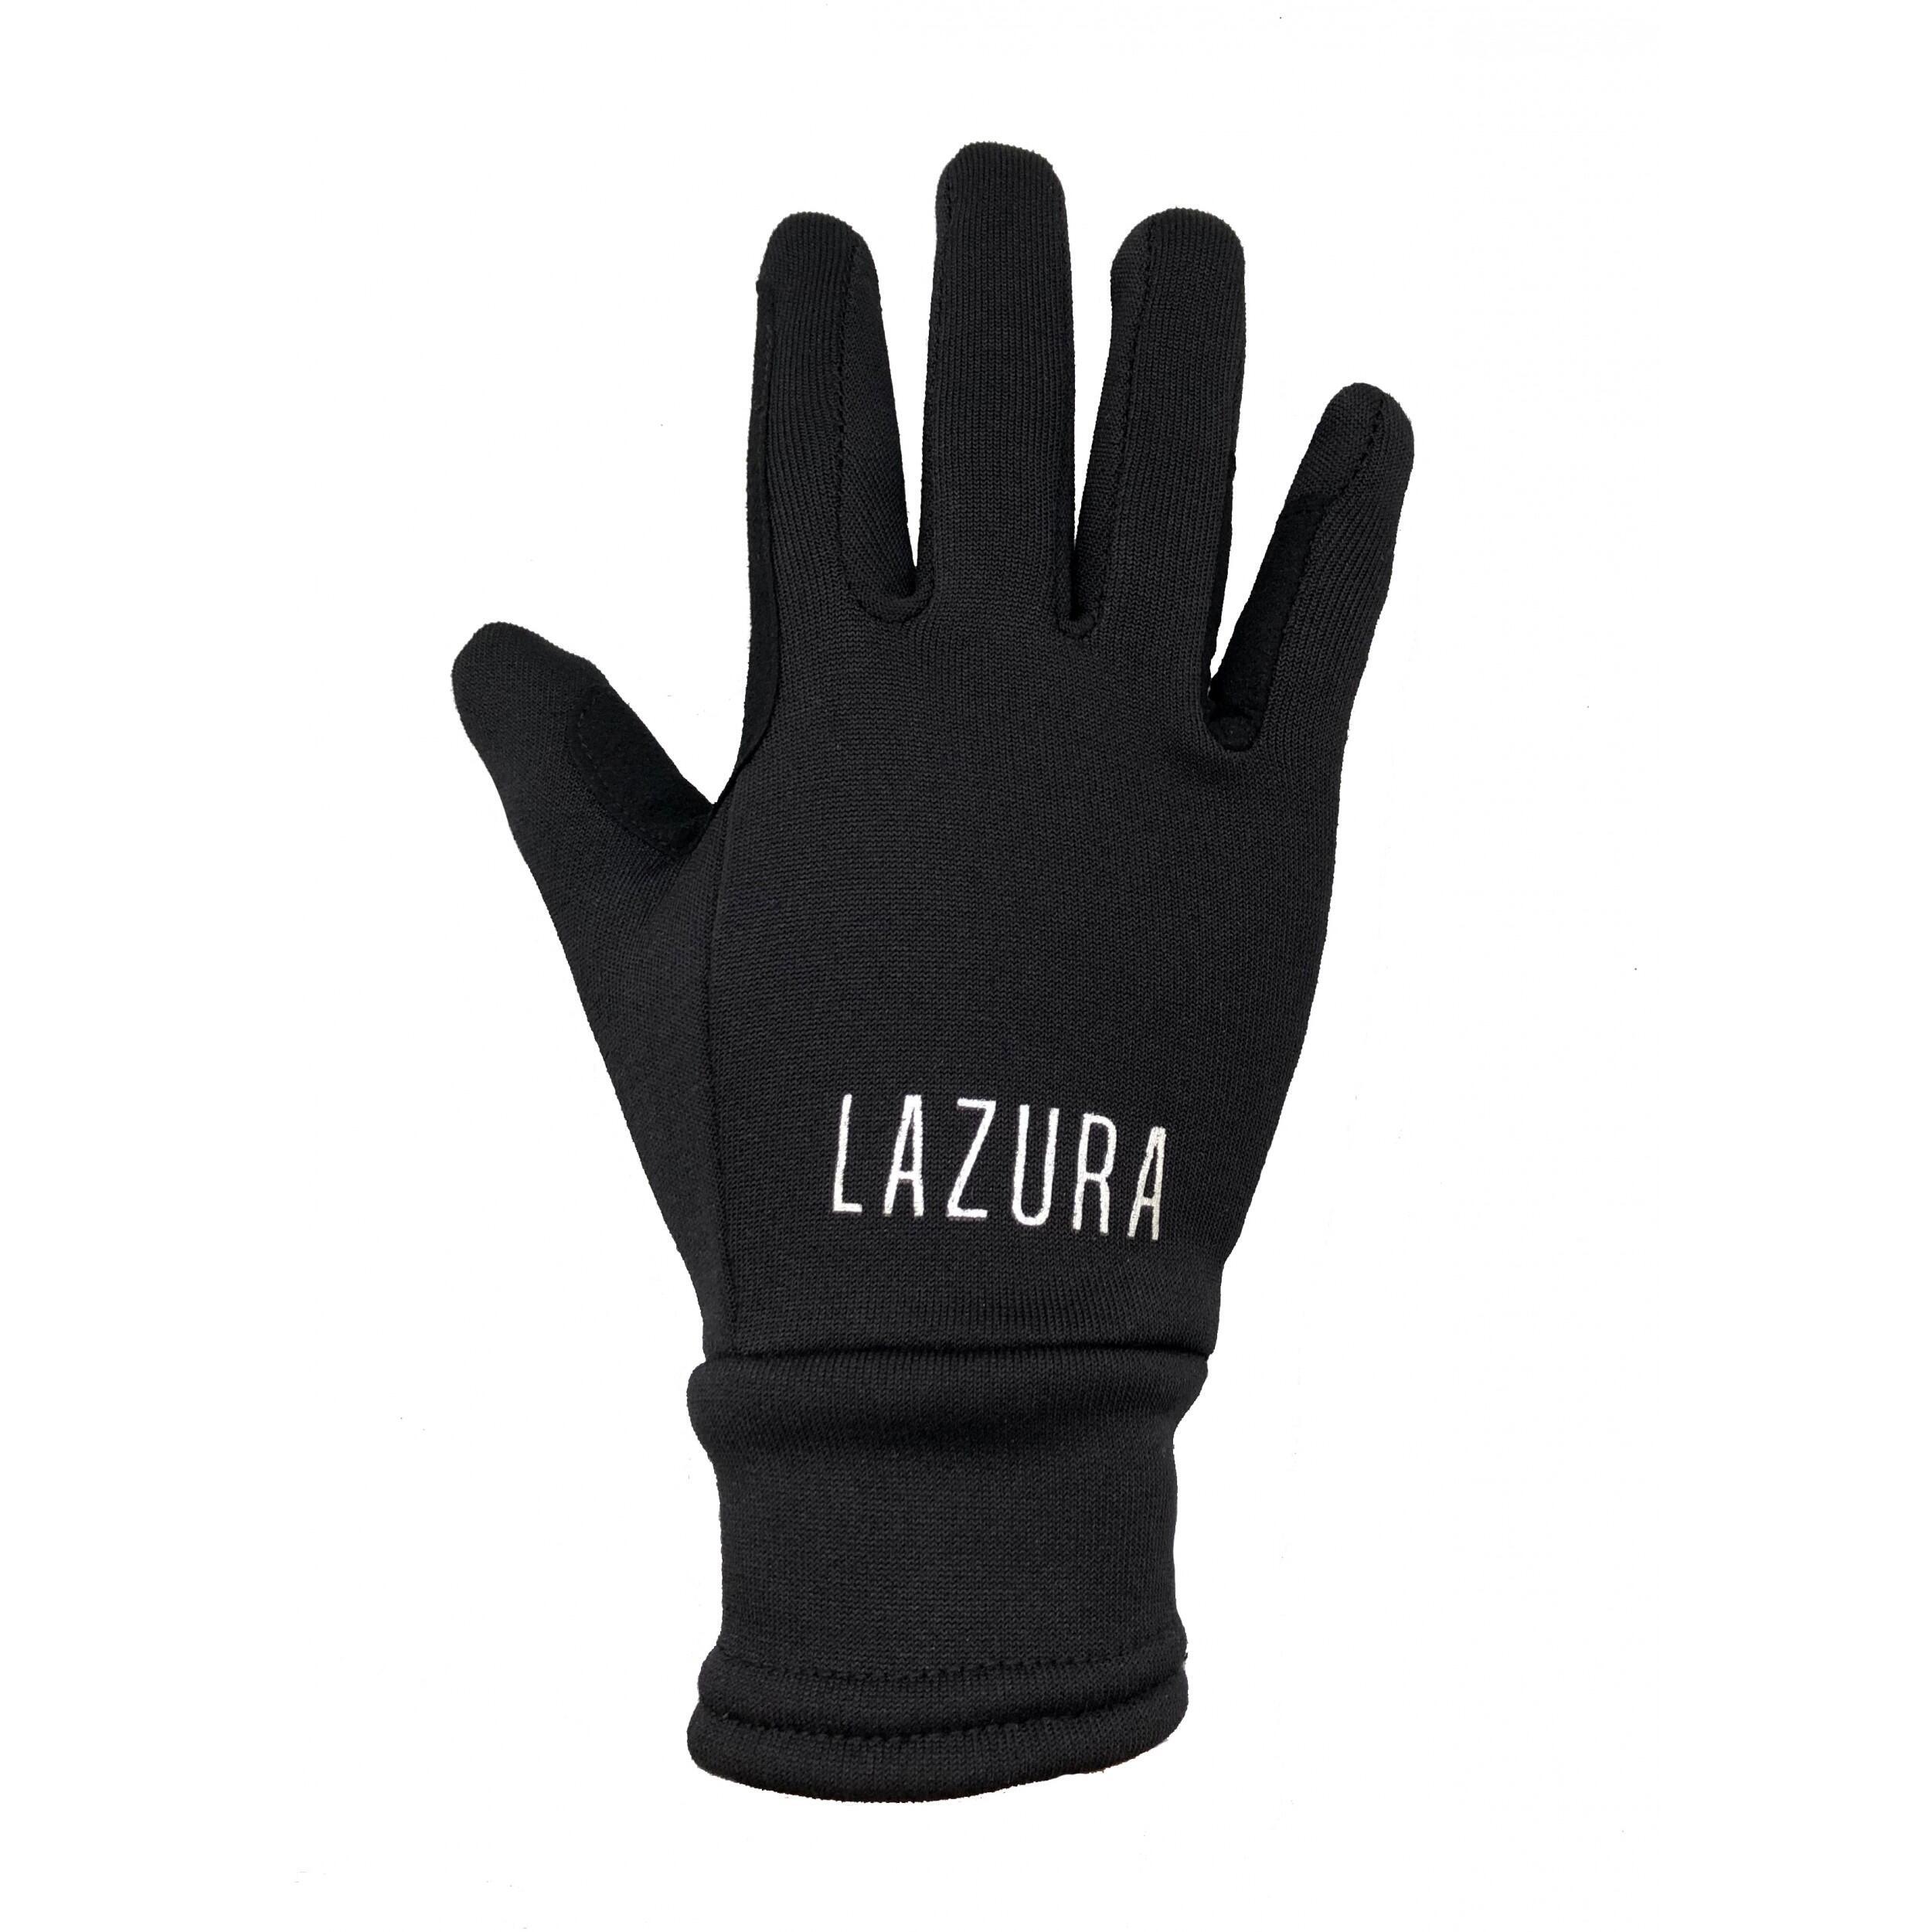 защитные противоскользящие перчатки для верховой езды Перчатки Lazura для верховой езды, черный